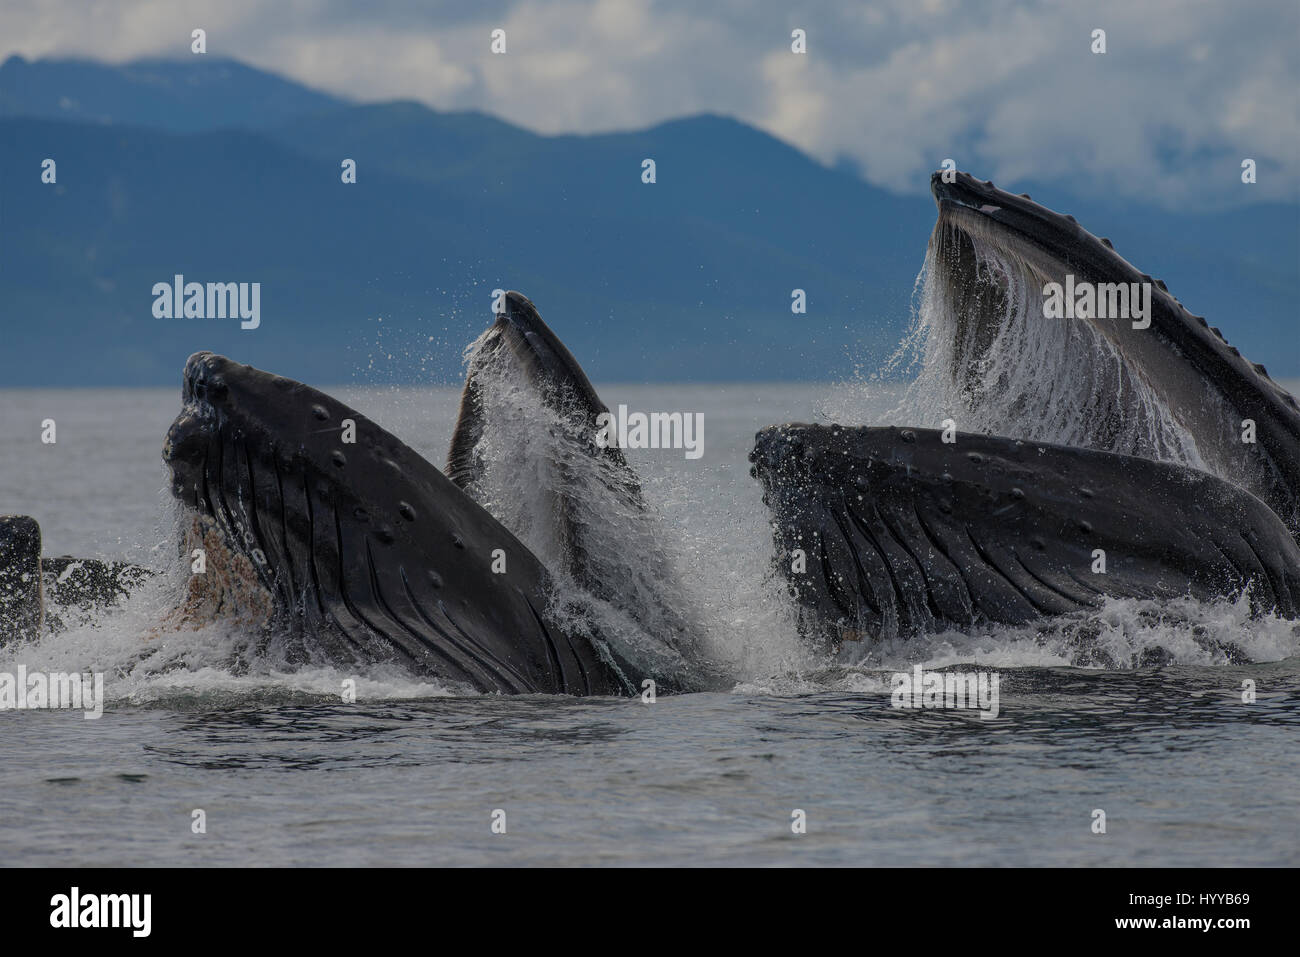 ALASKA, EE.UU.: Las ballenas jorobadas para alimentar la red de burbujas. Espectaculares imágenes de ballenas jorobadas apareciendo para asemejarse a la cordillera como alimentación de red de burbujas que han sido capturados. La increíble serie de fotografías muestran cómo el 34-tonelada ballenas submarina de buceo para cazar su cena de arenque y haga resurgir a digerir rápidamente sus capturas antes de que el pescado puede hacer una escapada. En otra foto, un barco de pescadores ver el espectáculo. Otra imagen muestra un pico de jorobada desaparecen en lo alto de las nubes. Este asombroso encuentro fue capturado por el artista y fotógrafo americano, Scott Methvin (58) en el sur Foto de stock